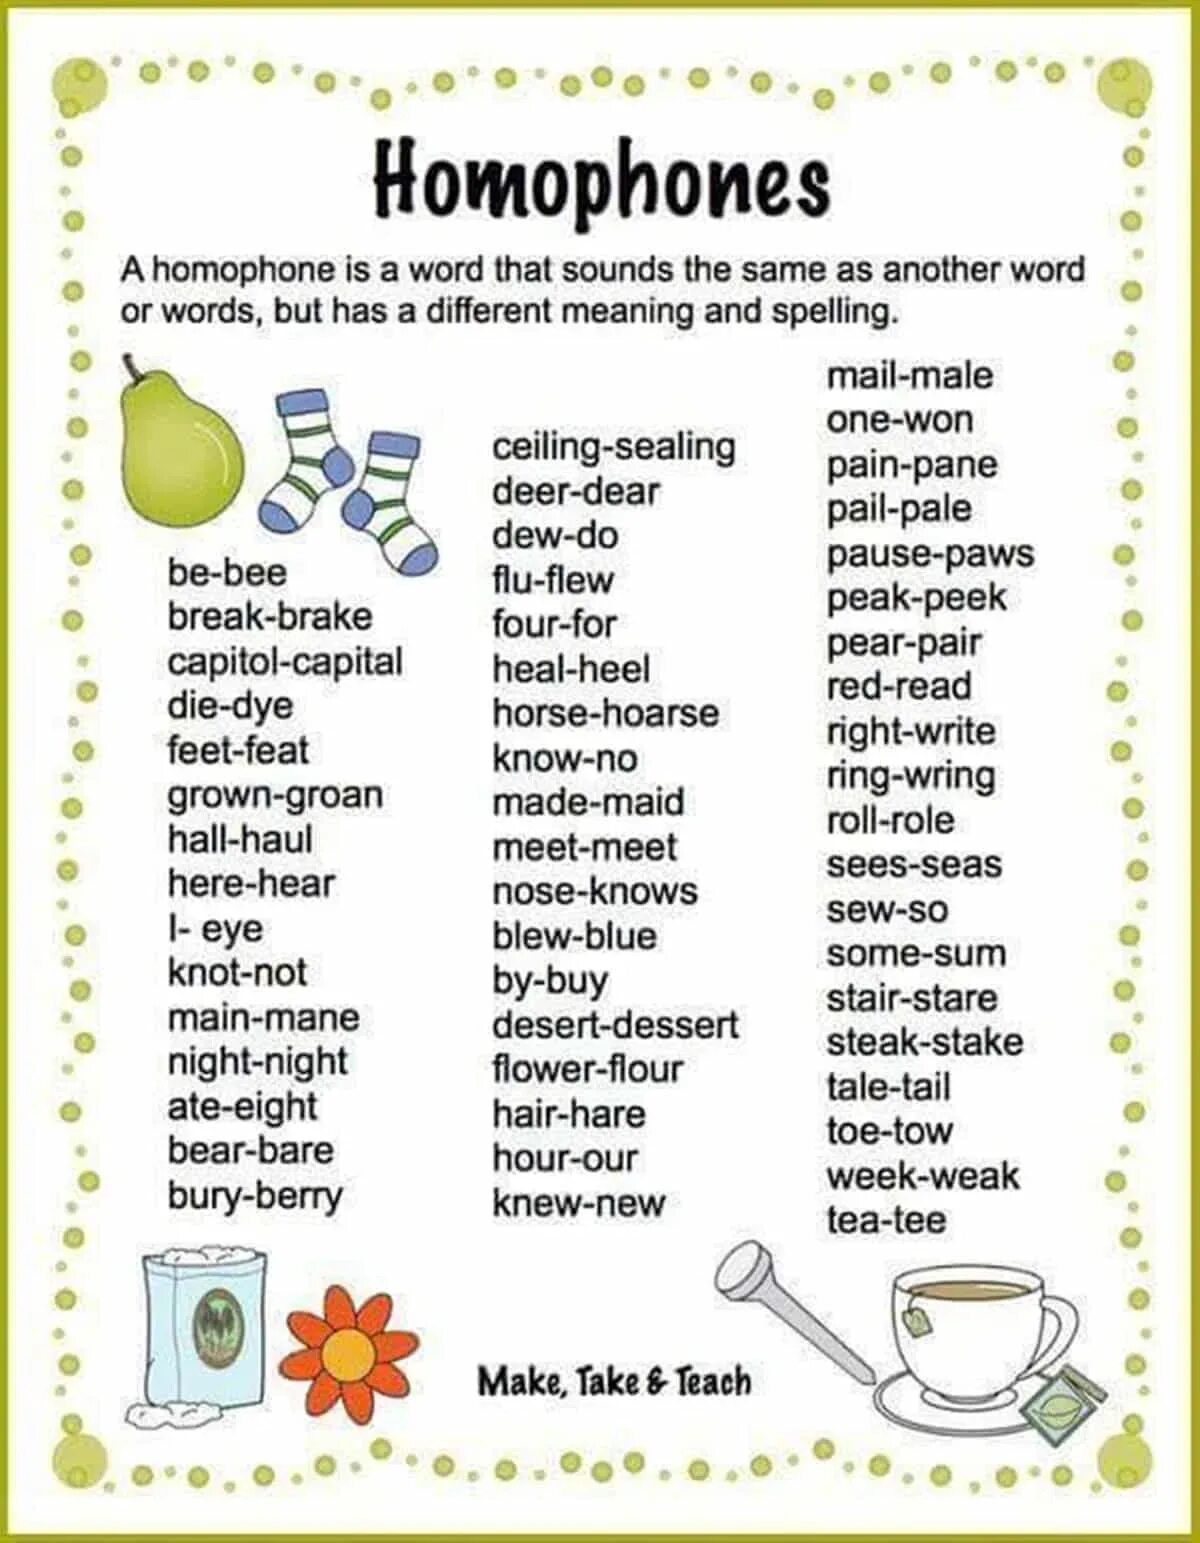 Homophones in English. Омофоны в английском языке. Английские слова. Homophones in English таблица.